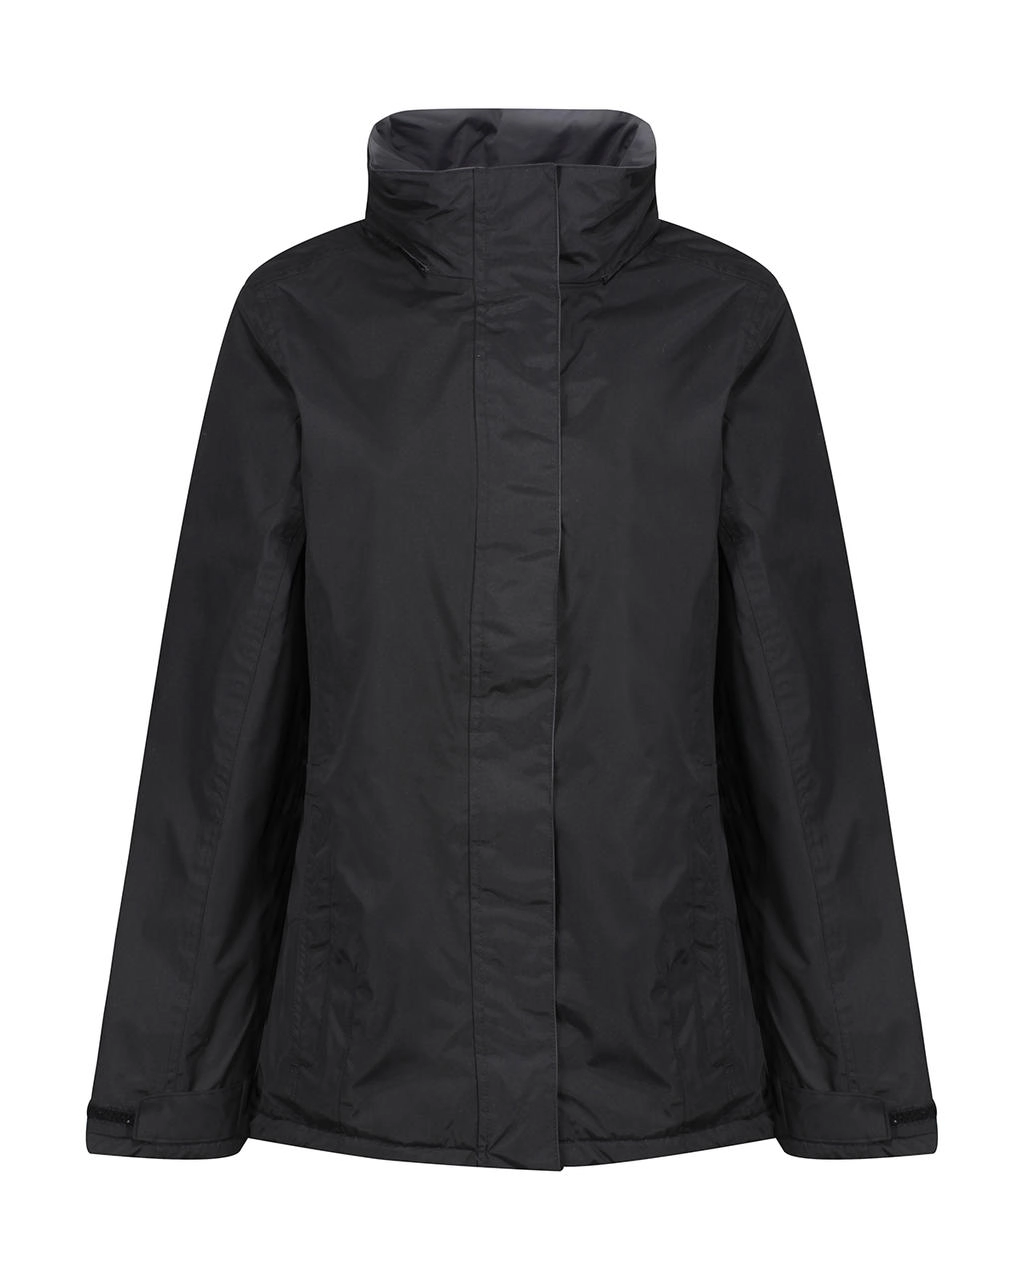 Ladies` Beauford Insulated Jacket zum Besticken und Bedrucken in der Farbe Black mit Ihren Logo, Schriftzug oder Motiv.